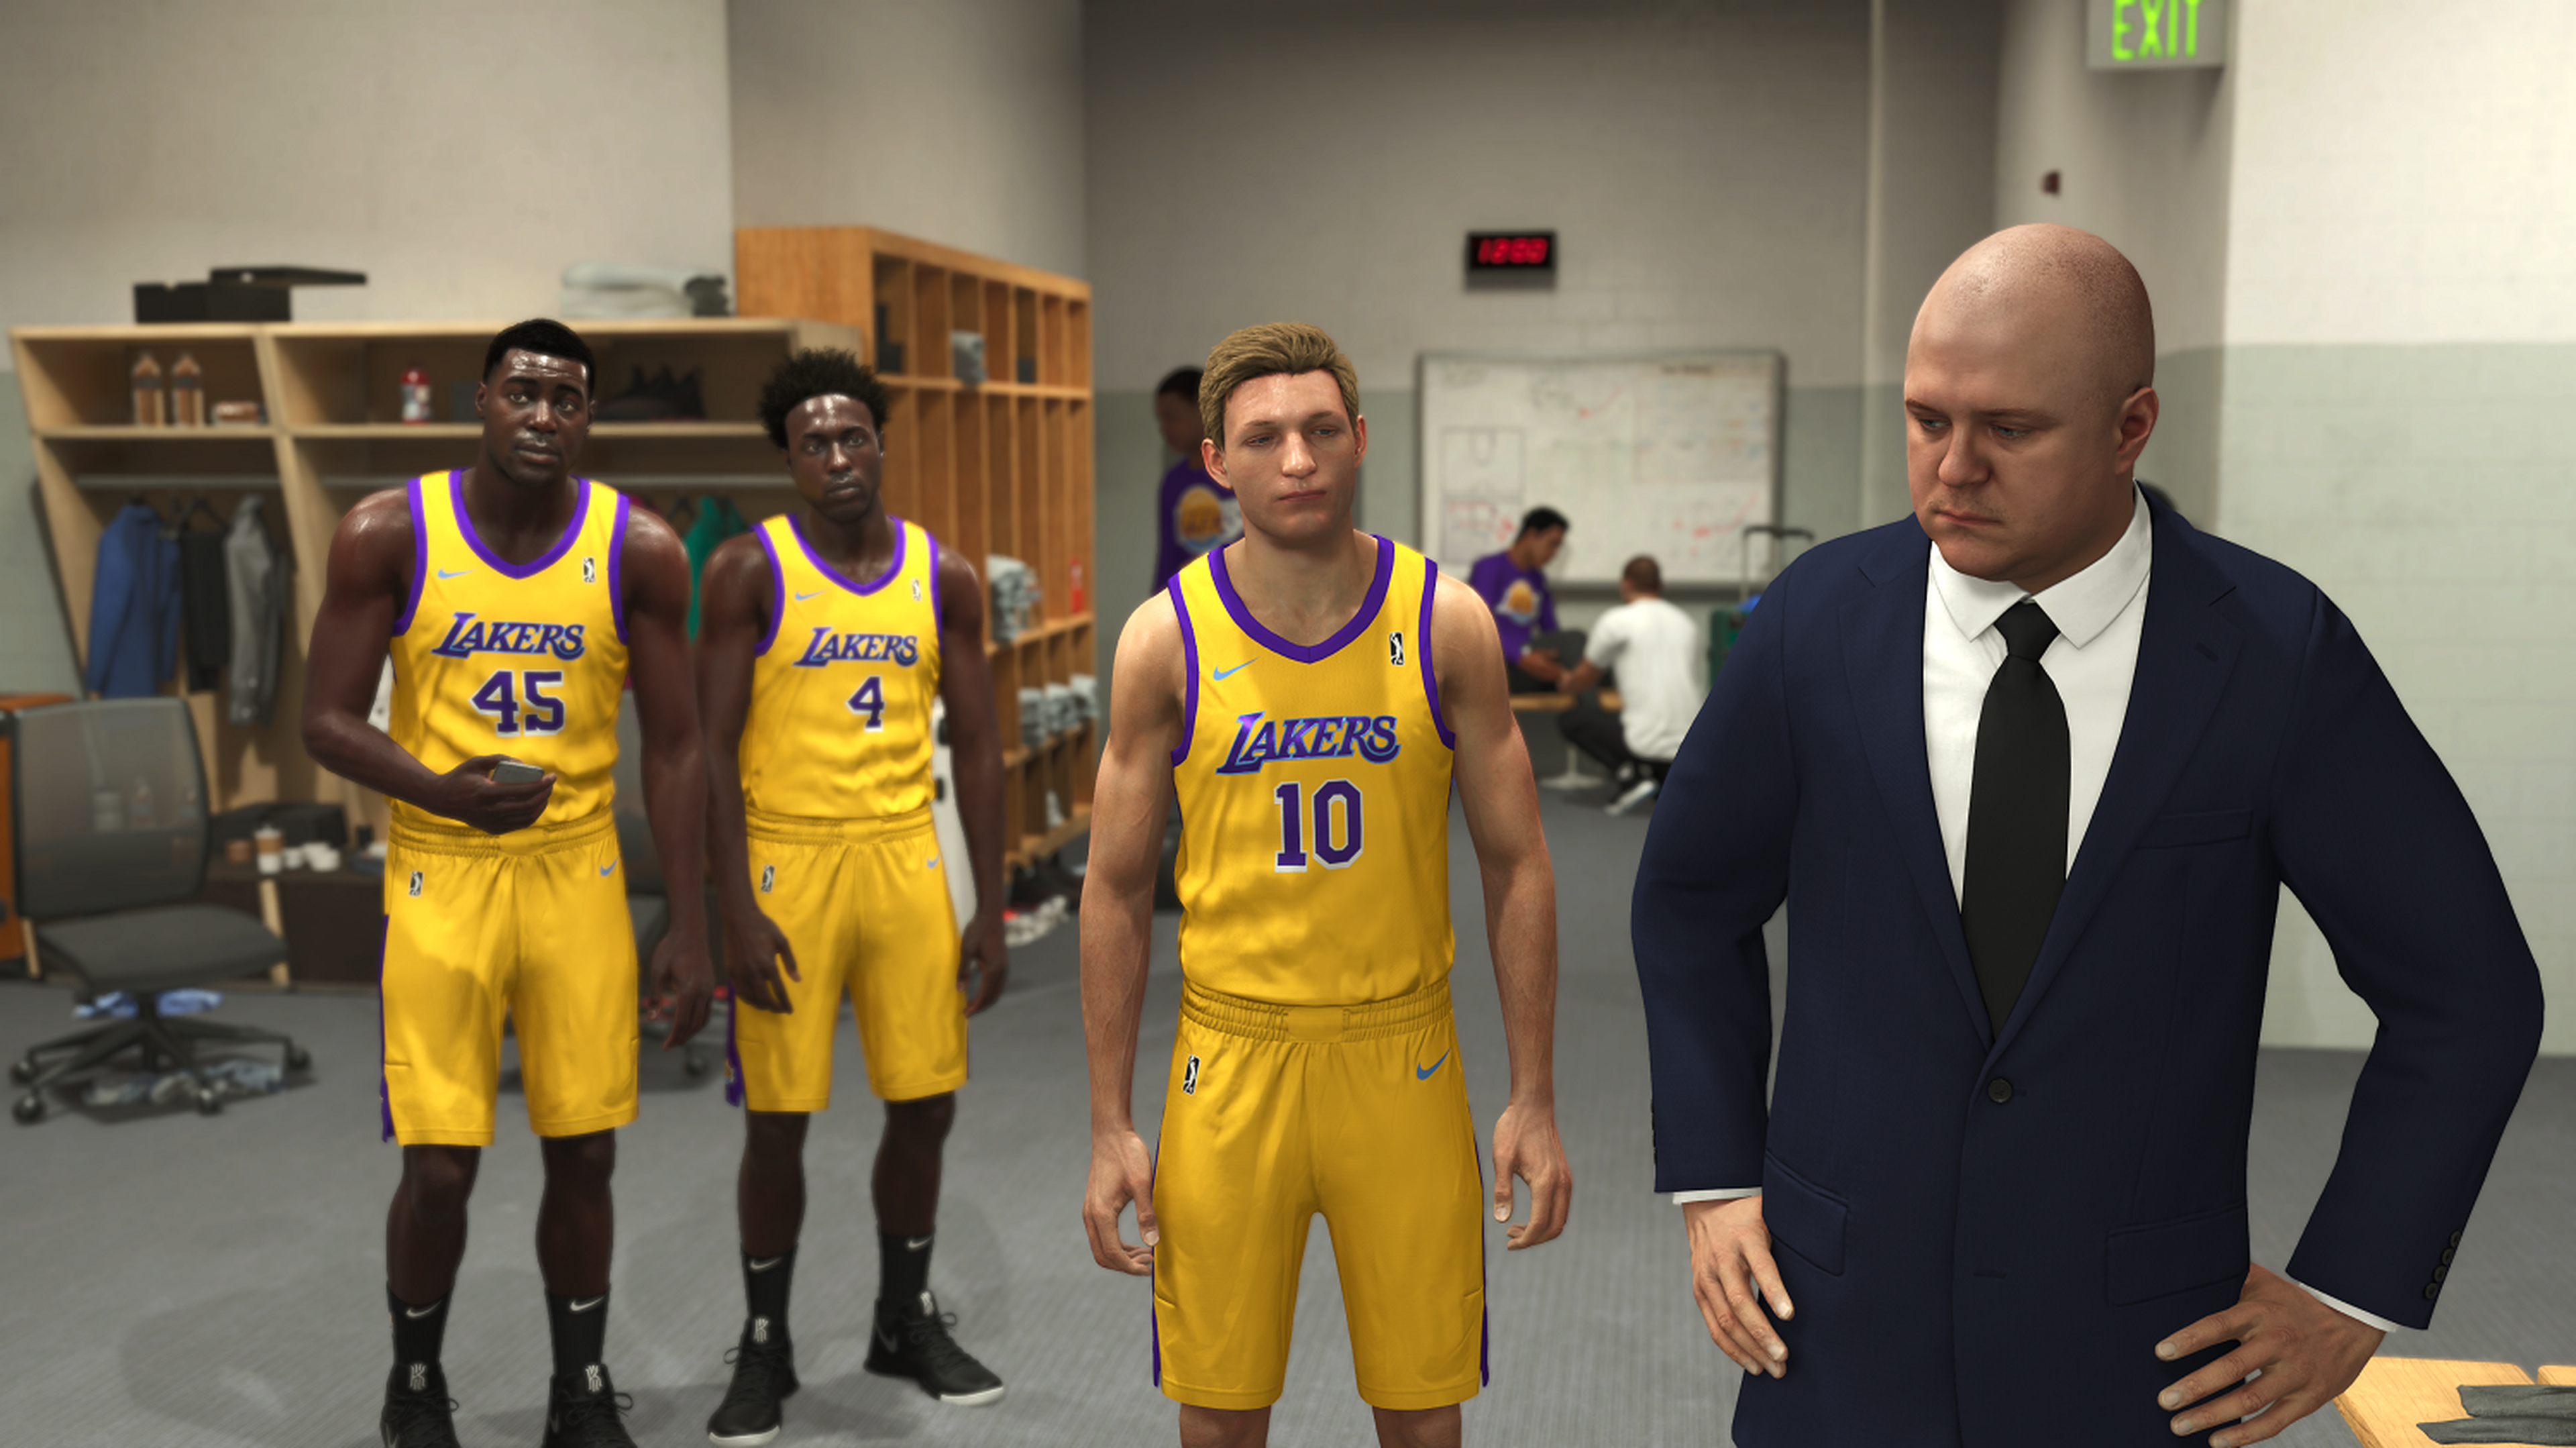 Análisis de NBA 2K21 para PlayStation 5 y Xbox Series X-S